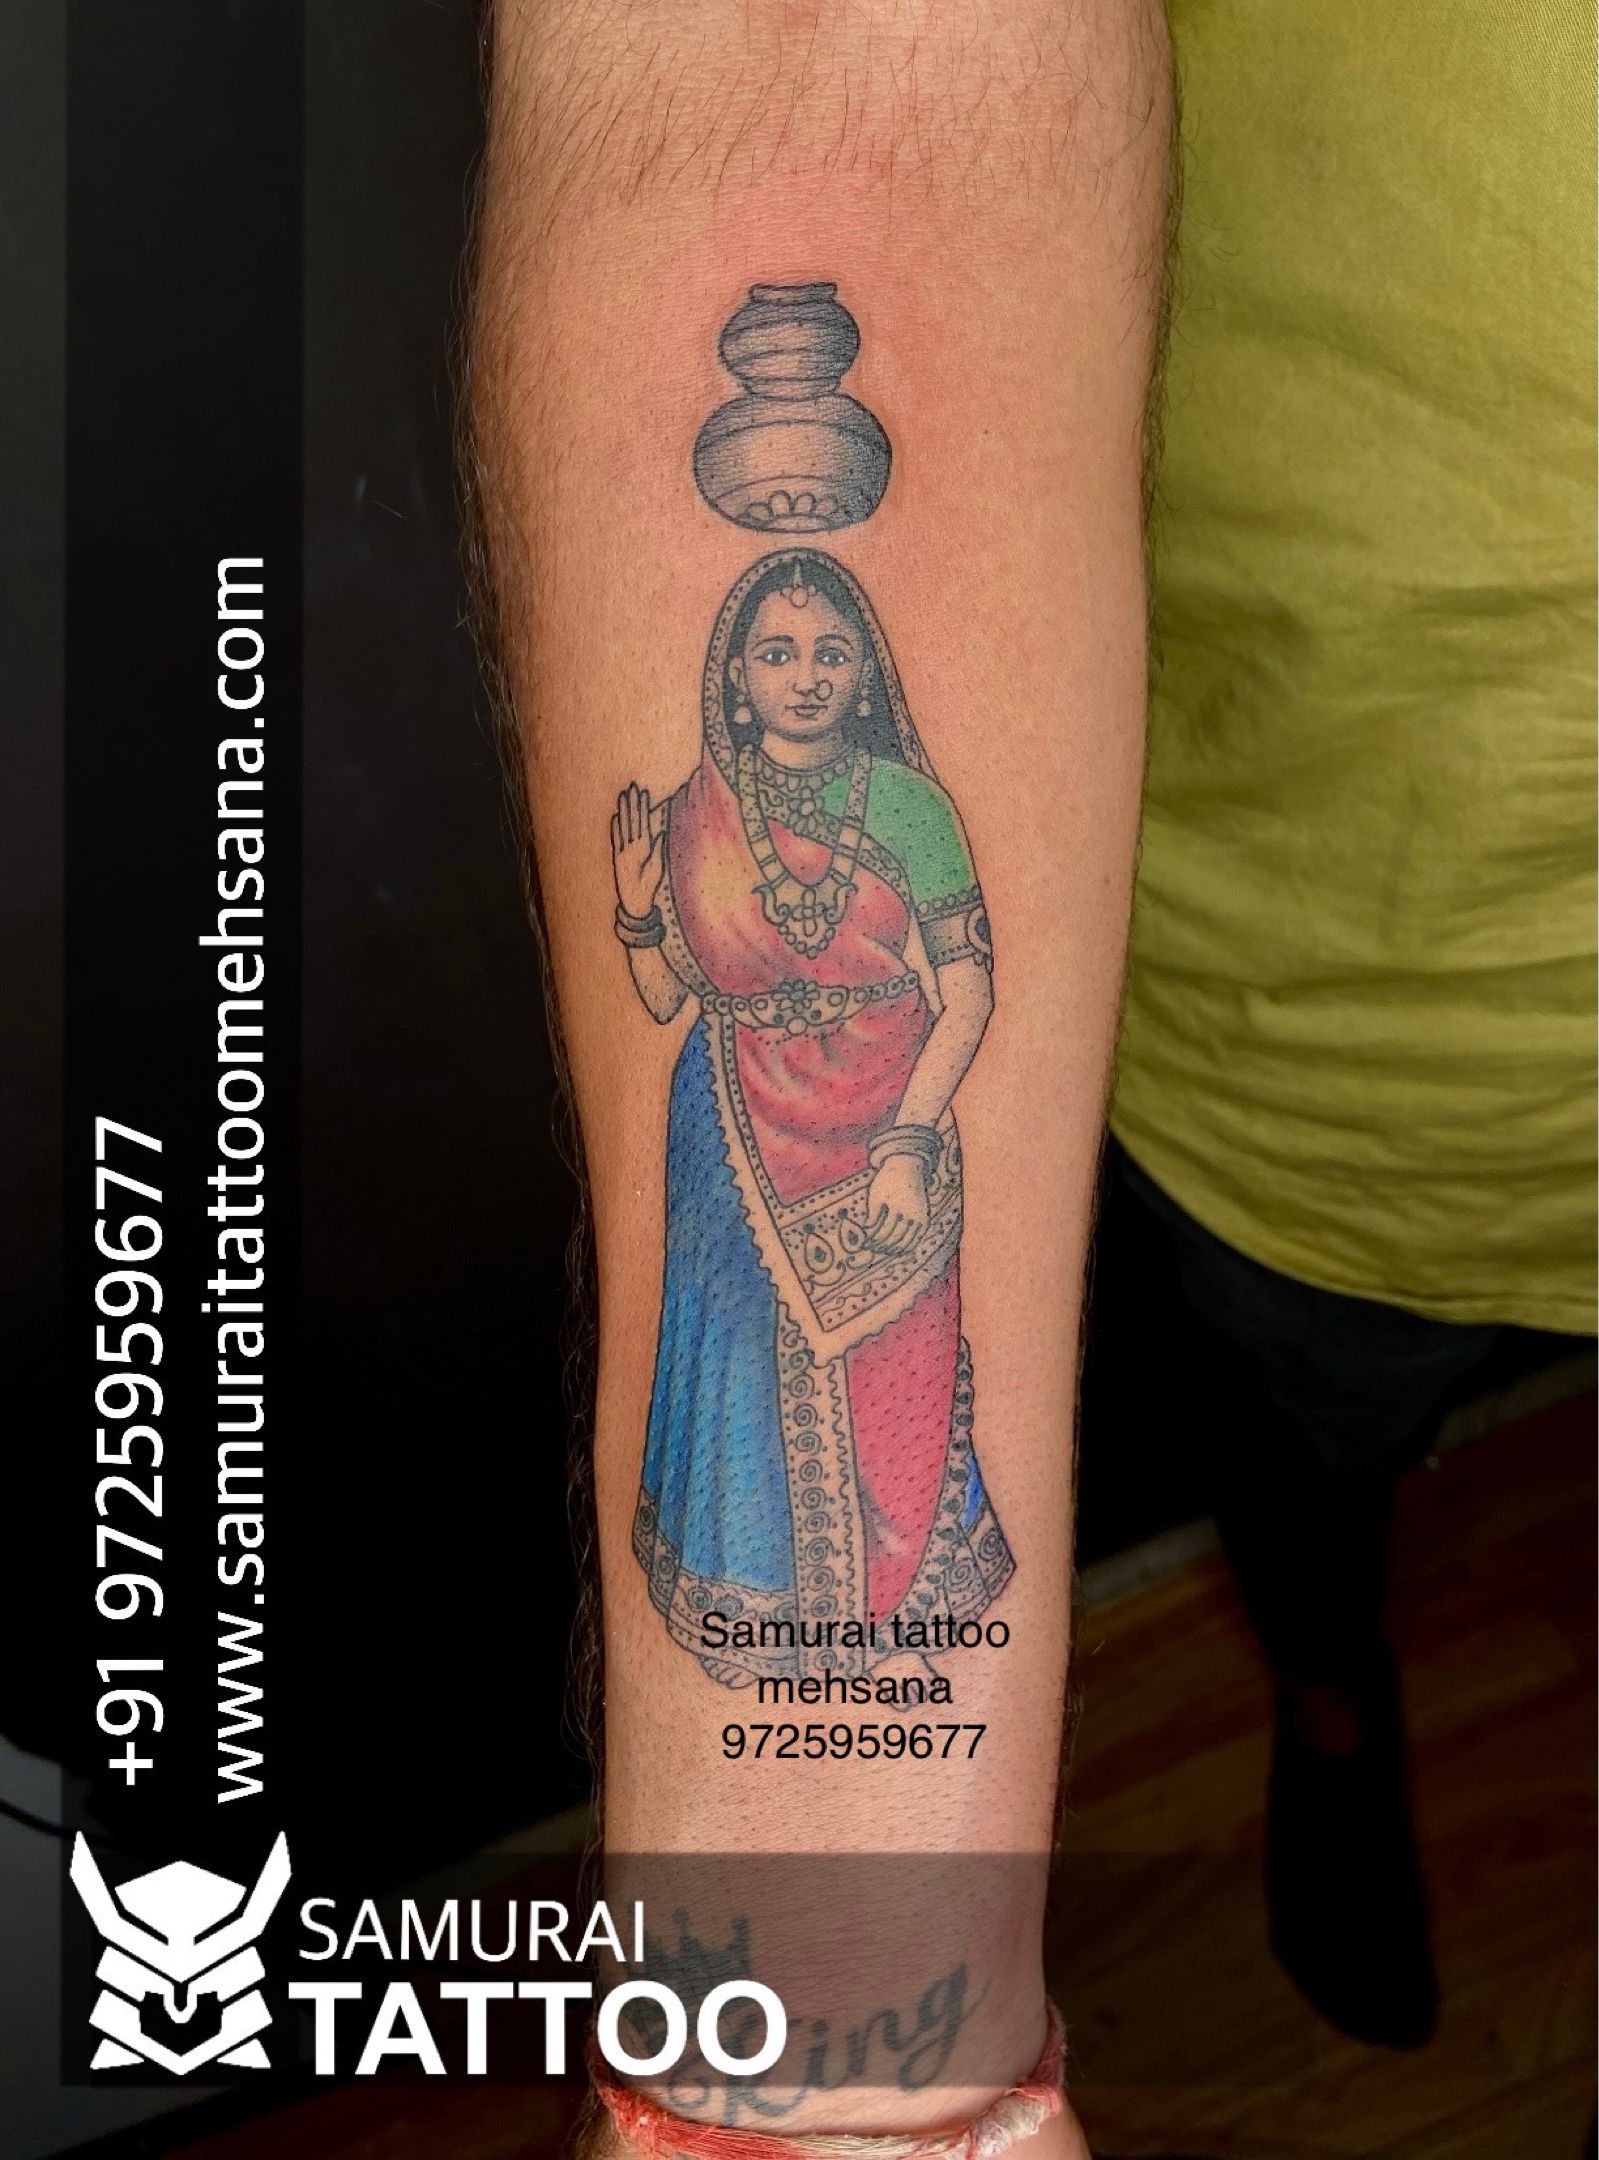 𝙉𝙚𝙬 𝙩𝙖𝙩𝙩𝙤𝙤 😎 #tonytattoo #tattooartist #newtattoo #indiatattoo # tattoo | Instagram